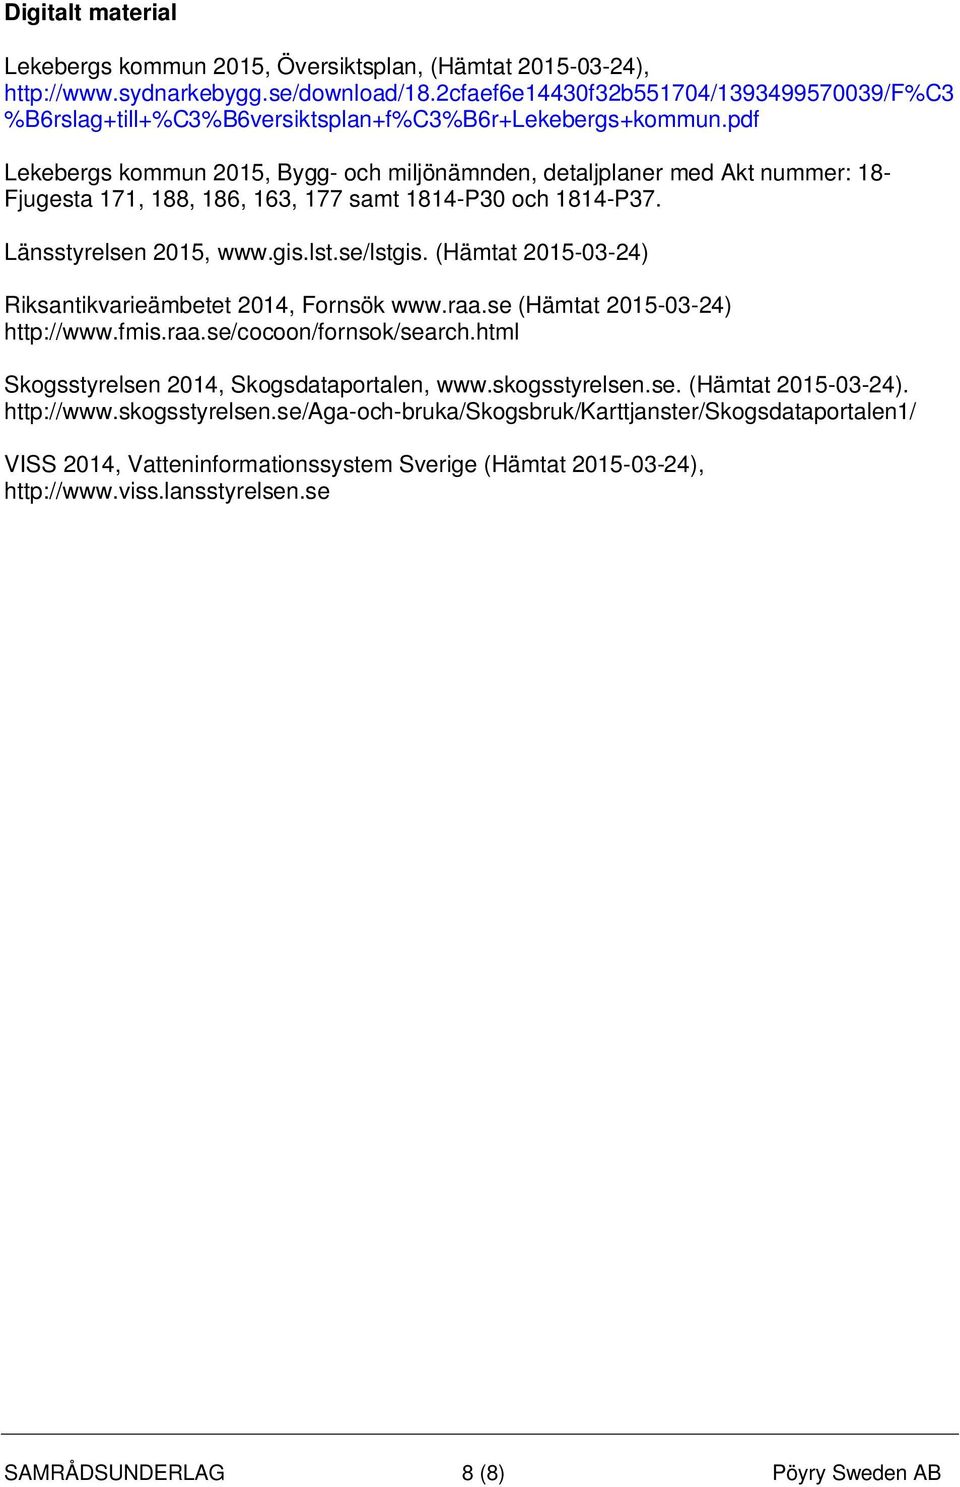 pdf Lekebergs kommun 2015, Bygg- och miljönämnden, detaljplaner med Akt nummer: 18- Fjugesta 171, 188, 186, 163, 177 samt 1814-P30 och 1814-P37. Länsstyrelsen 2015, www.gis.lst.se/lstgis.